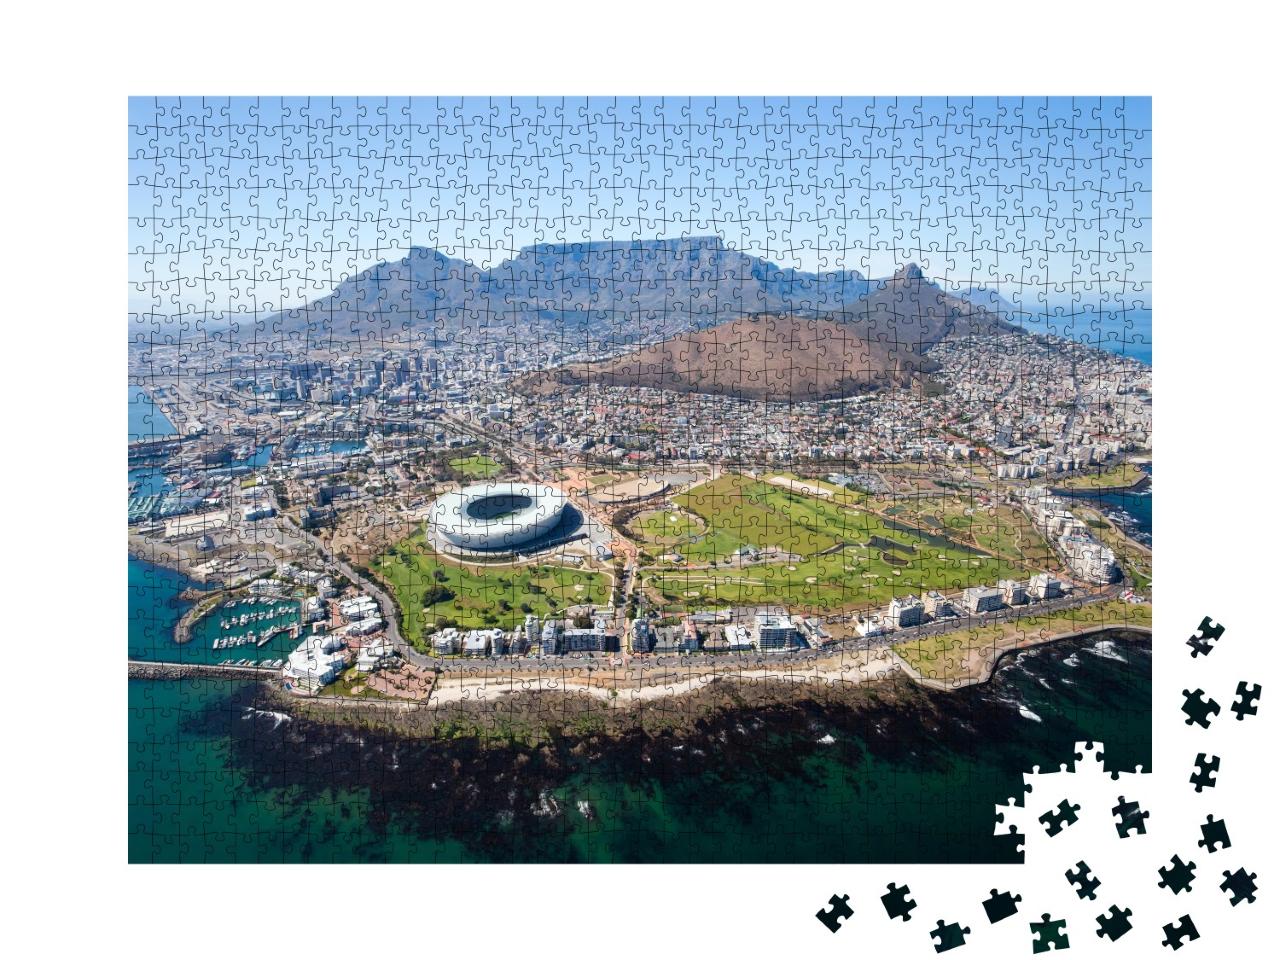 Puzzle de 1000 pièces « Vue panoramique de Cape Town, Afrique du Sud »